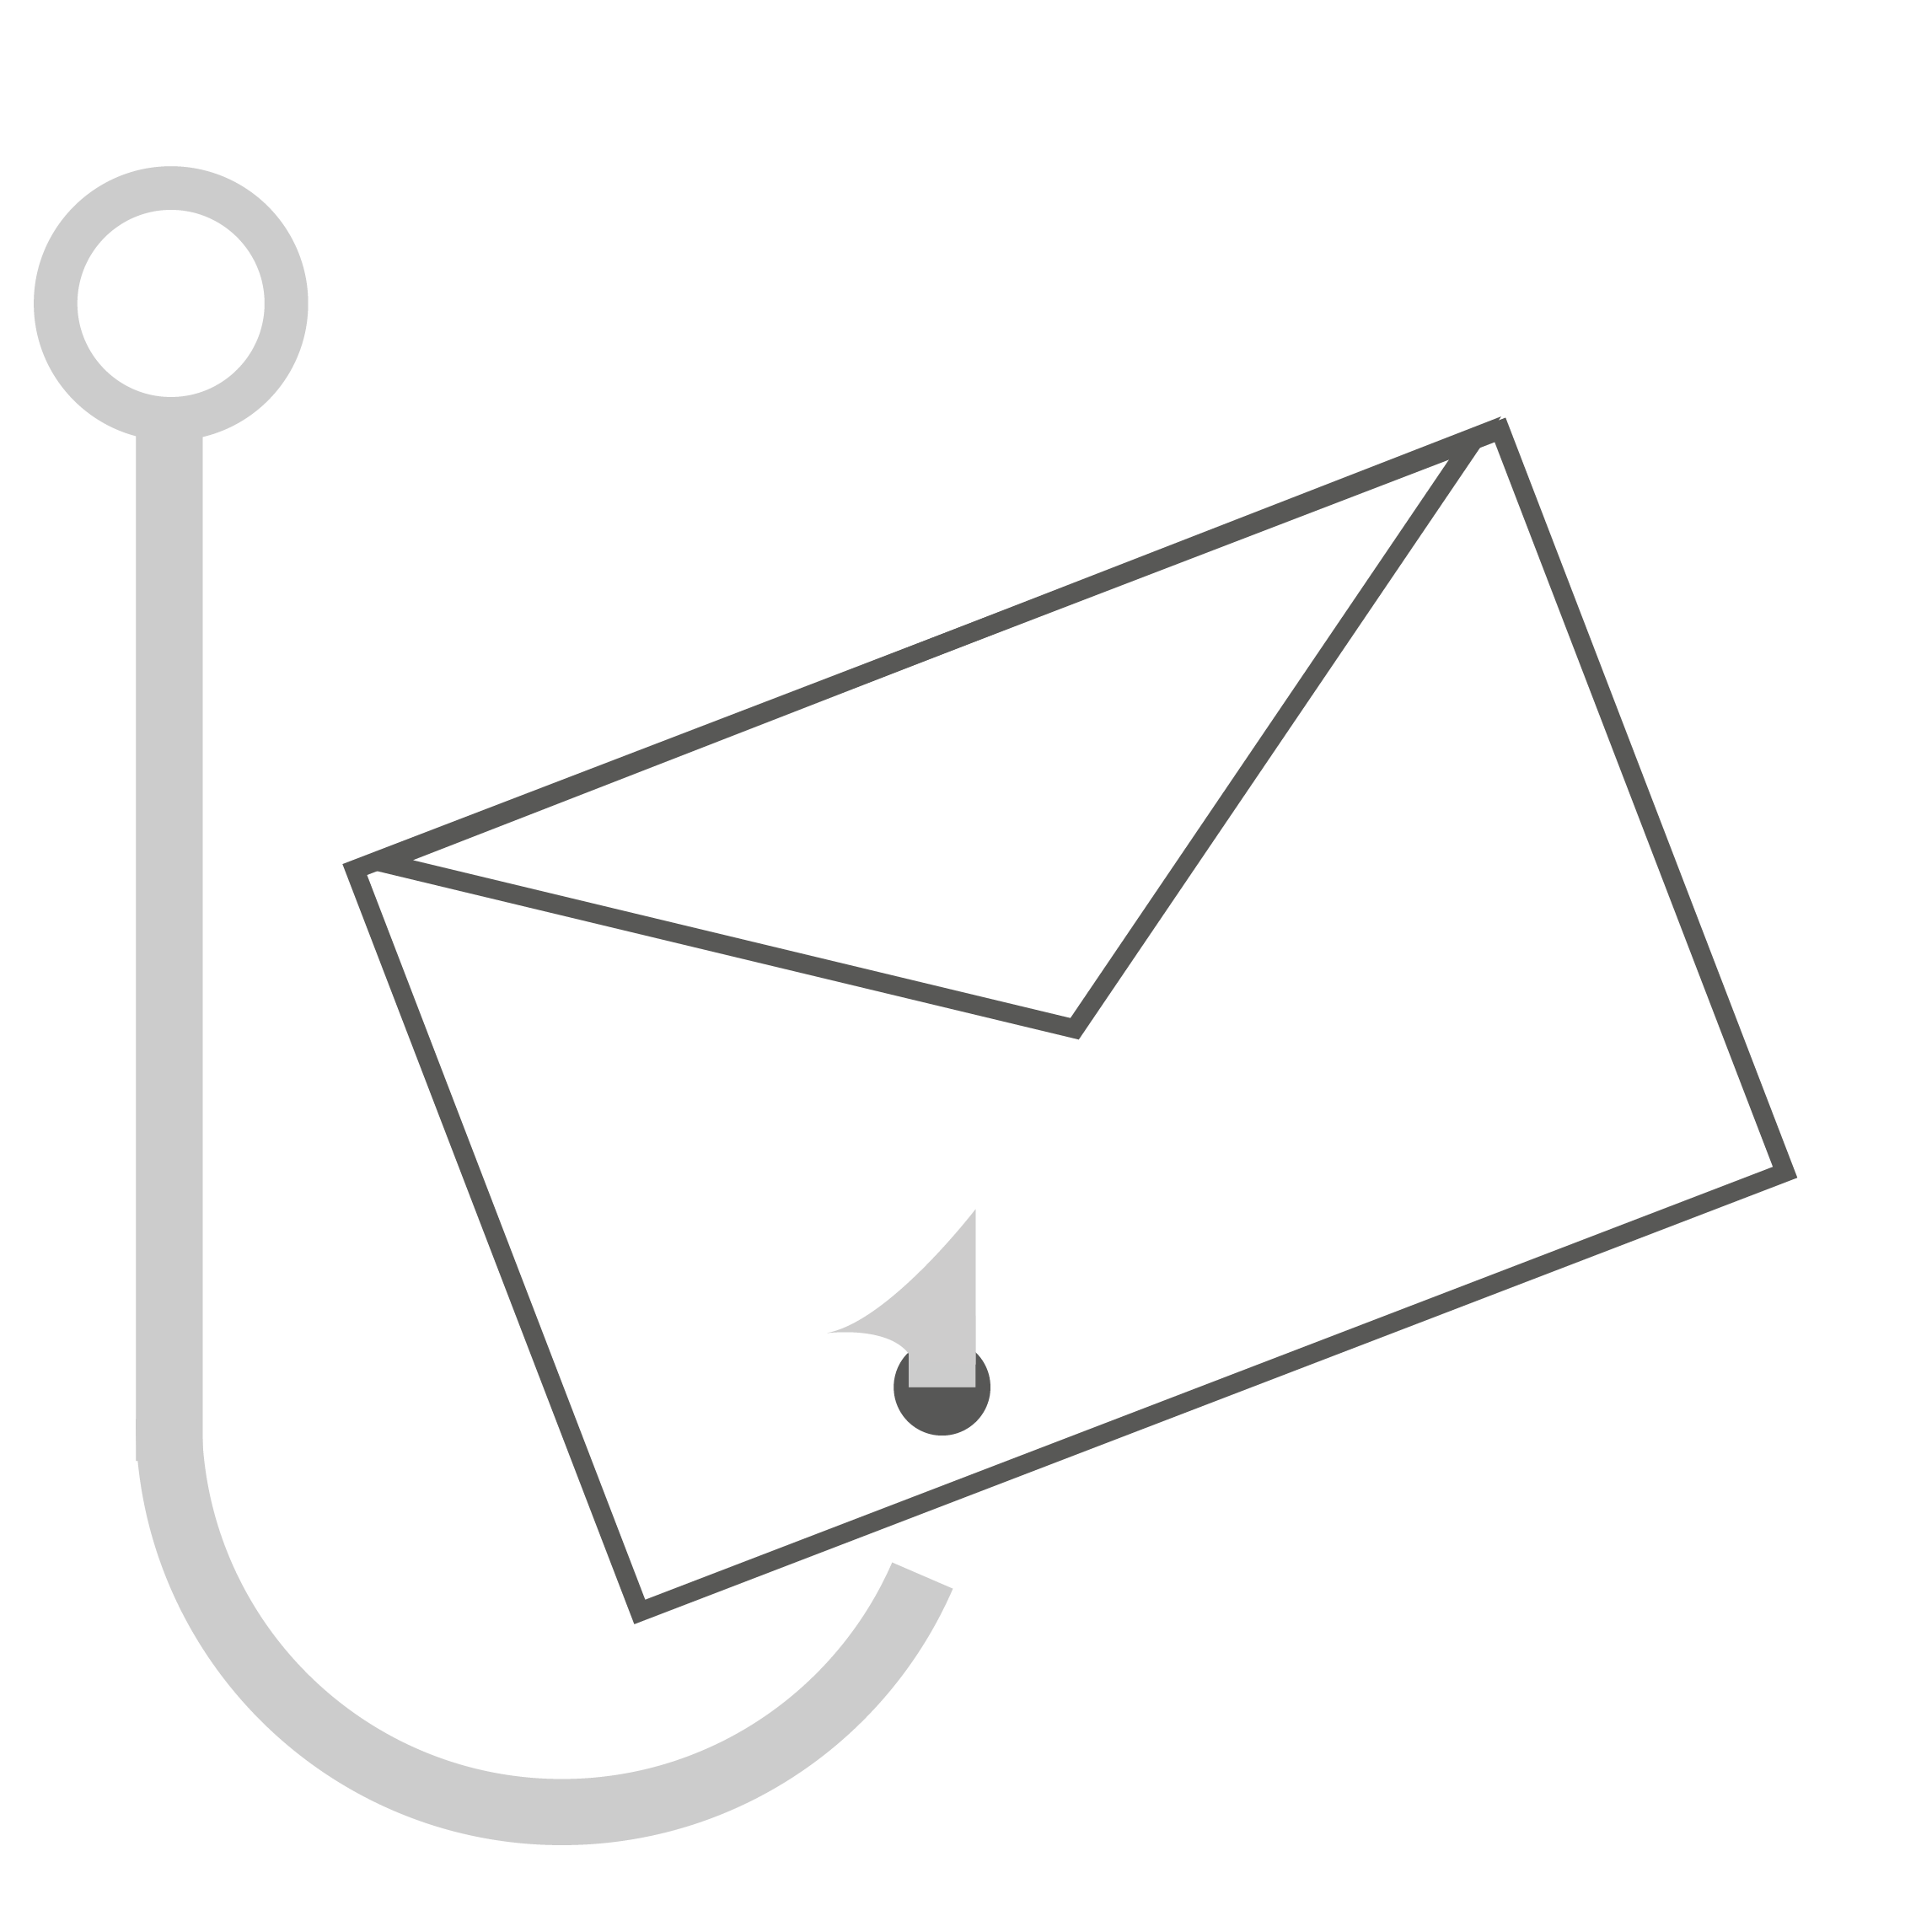 E-Mail Phishing